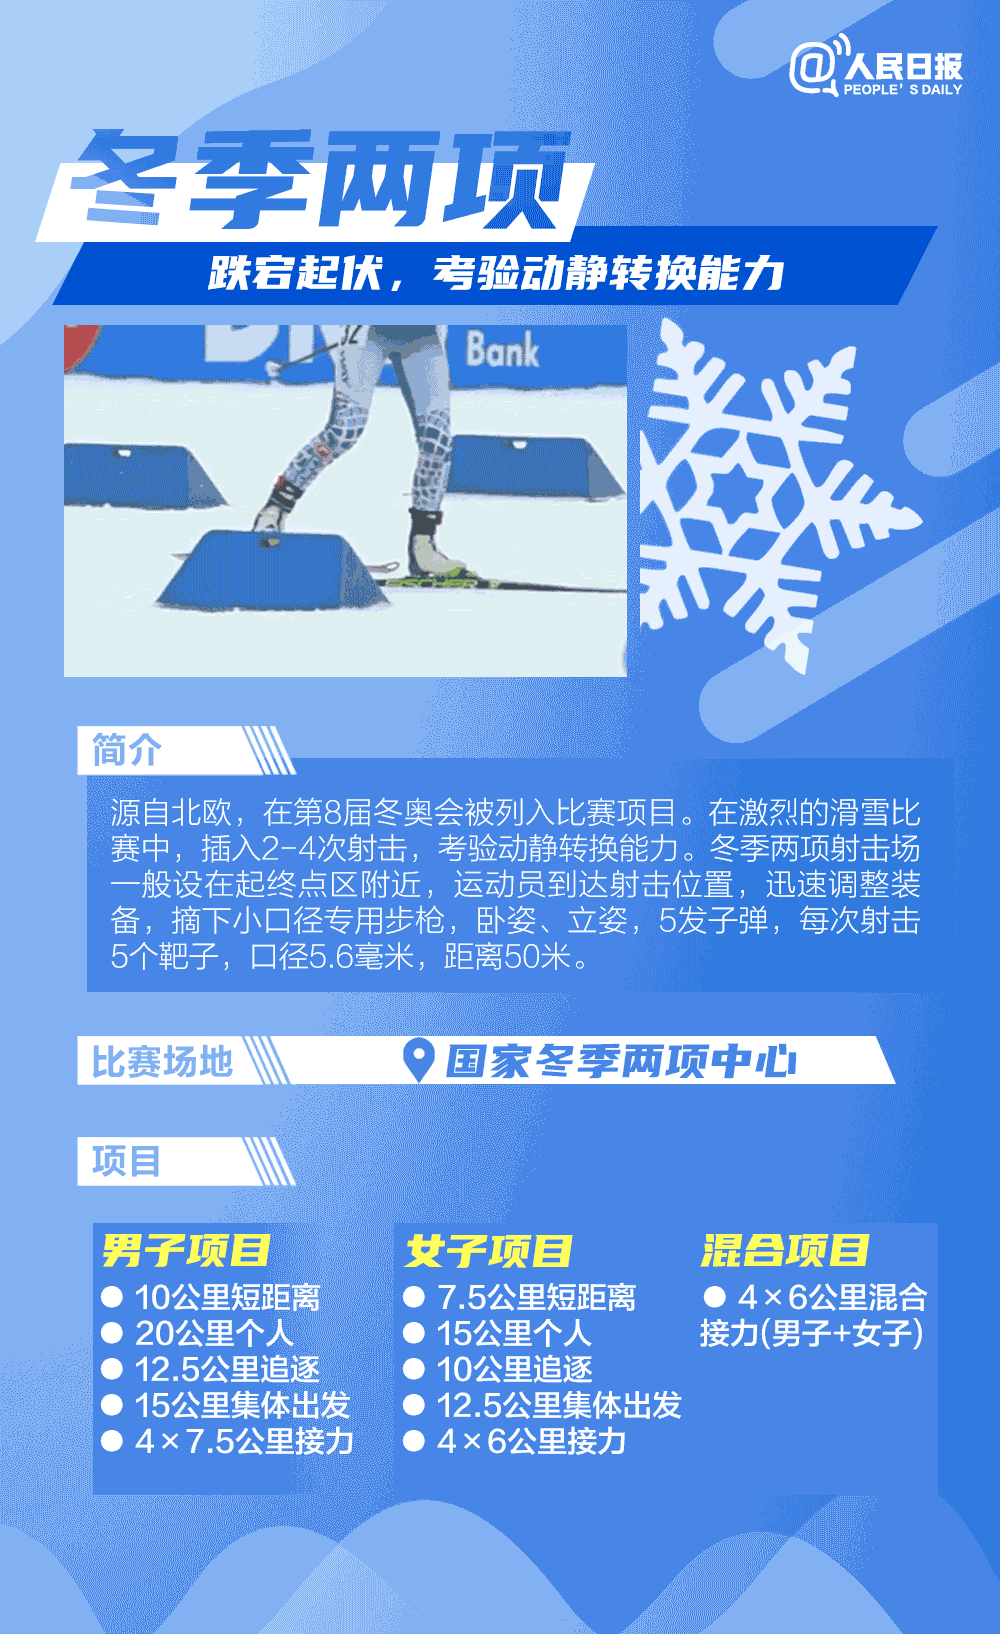 北京冬奥会共设7个大项,15个分项和109个小项,是设项和产生金牌最多的